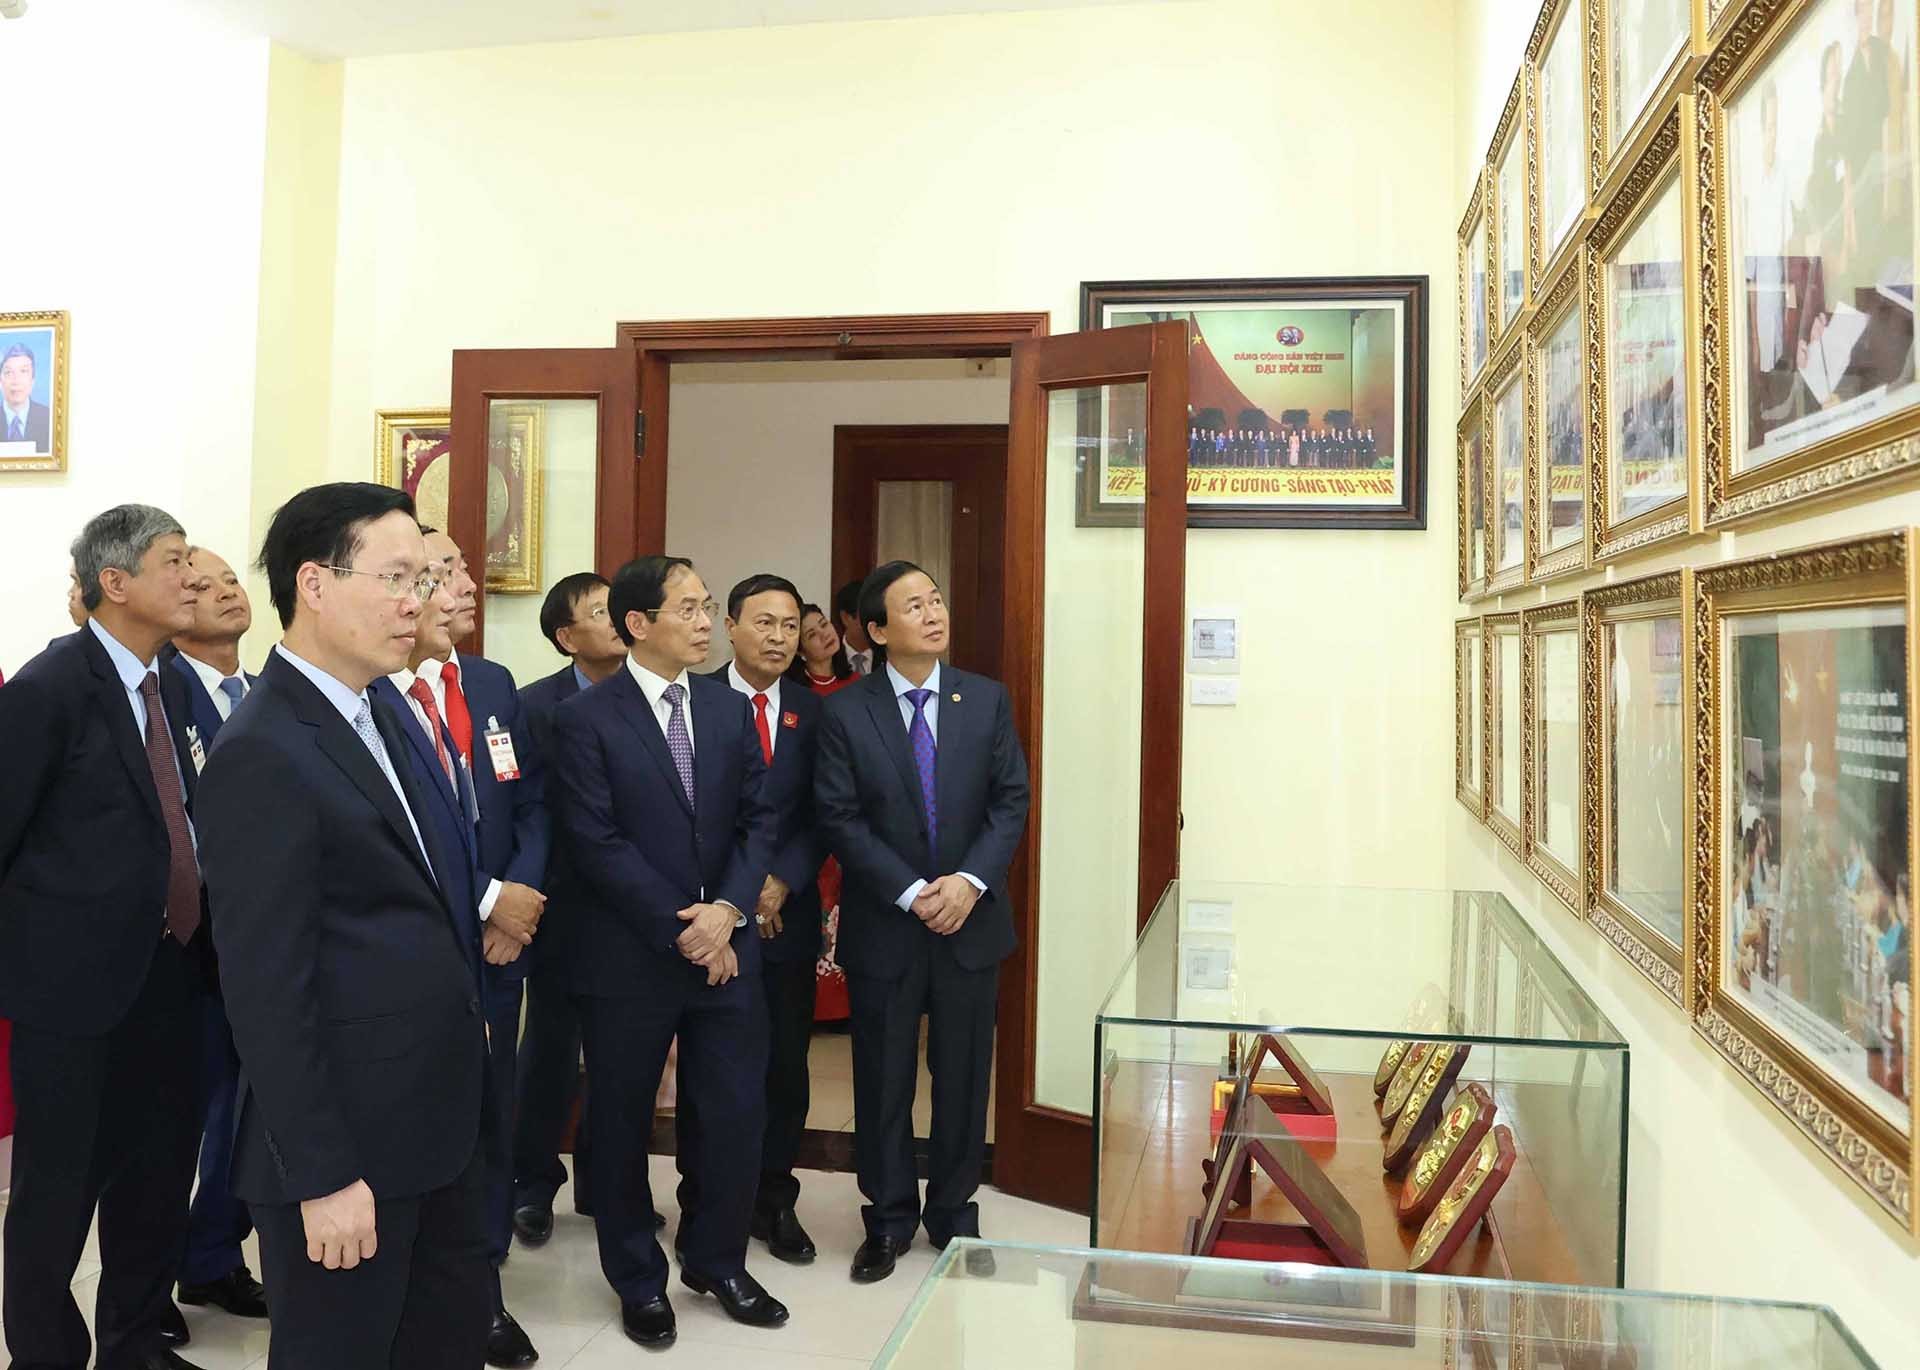 Chủ tịch nước gặp cán bộ nhân viên cơ quan đại diện Việt Nam cùng đại diện doanh nghiệp và cộng đồng người Việt tại Lào